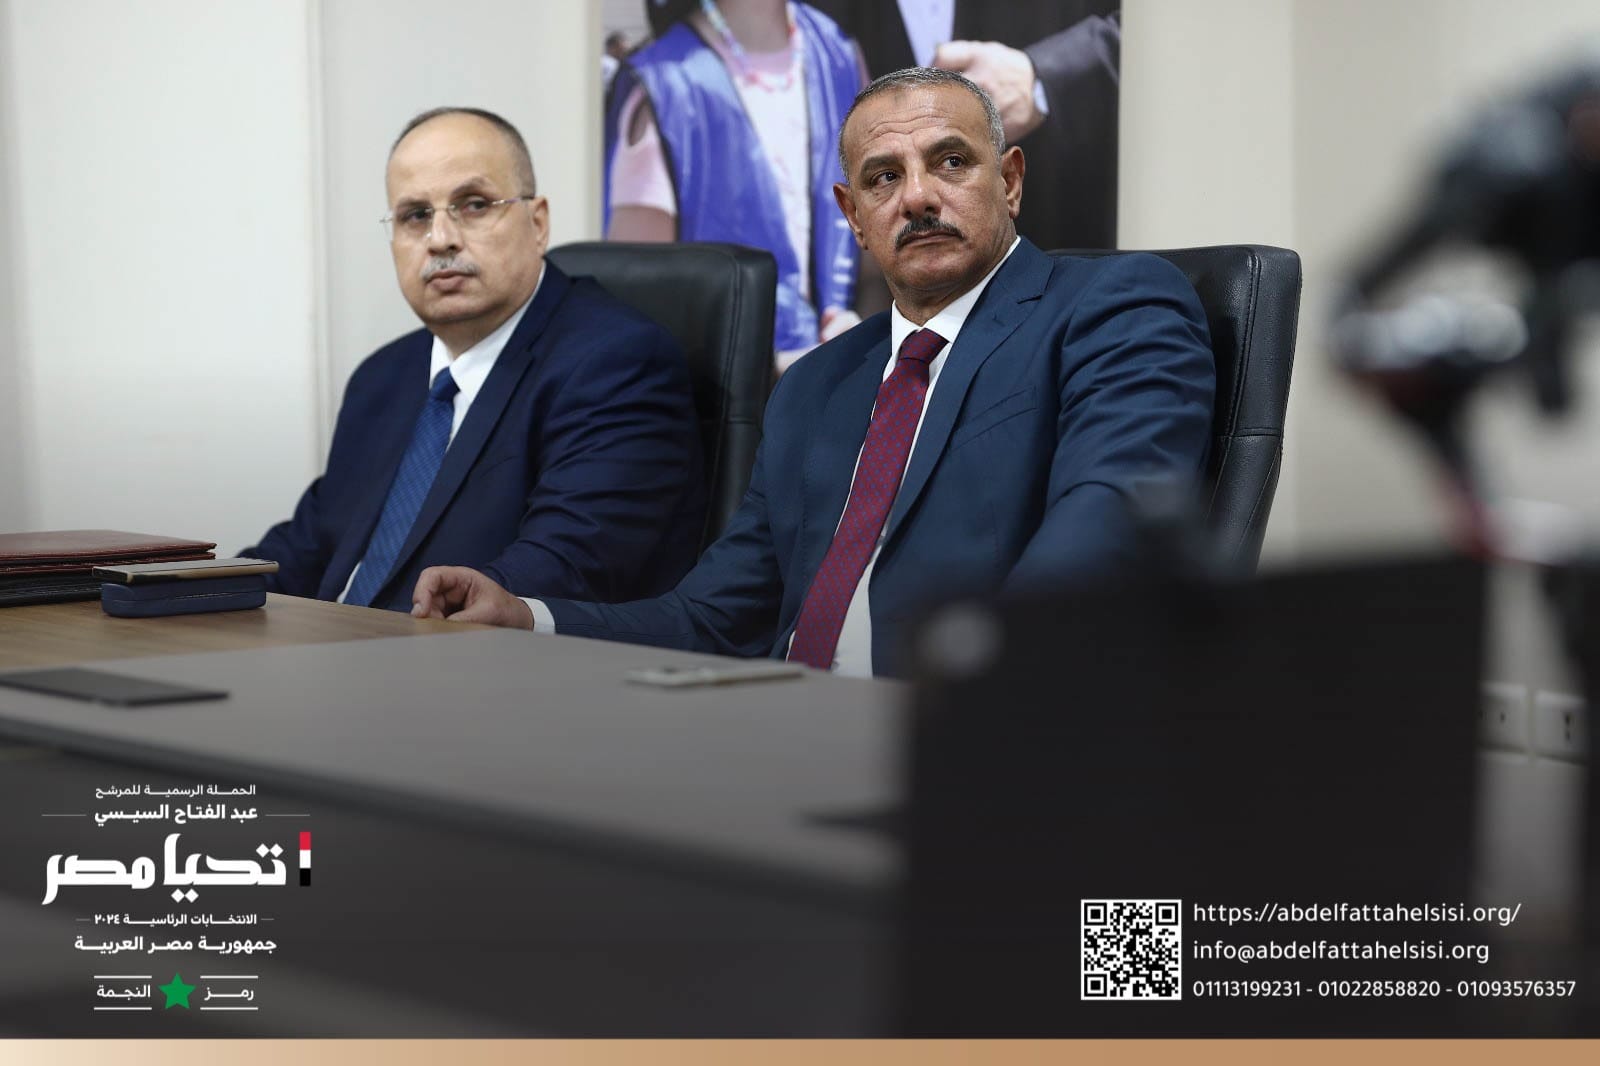 الحملة الرسمية للمرشح الرئاسي عبد الفتاح السيسي تلتقي بالمصريين في الخارج عبر تقنية الفيديو كونفراس (4)